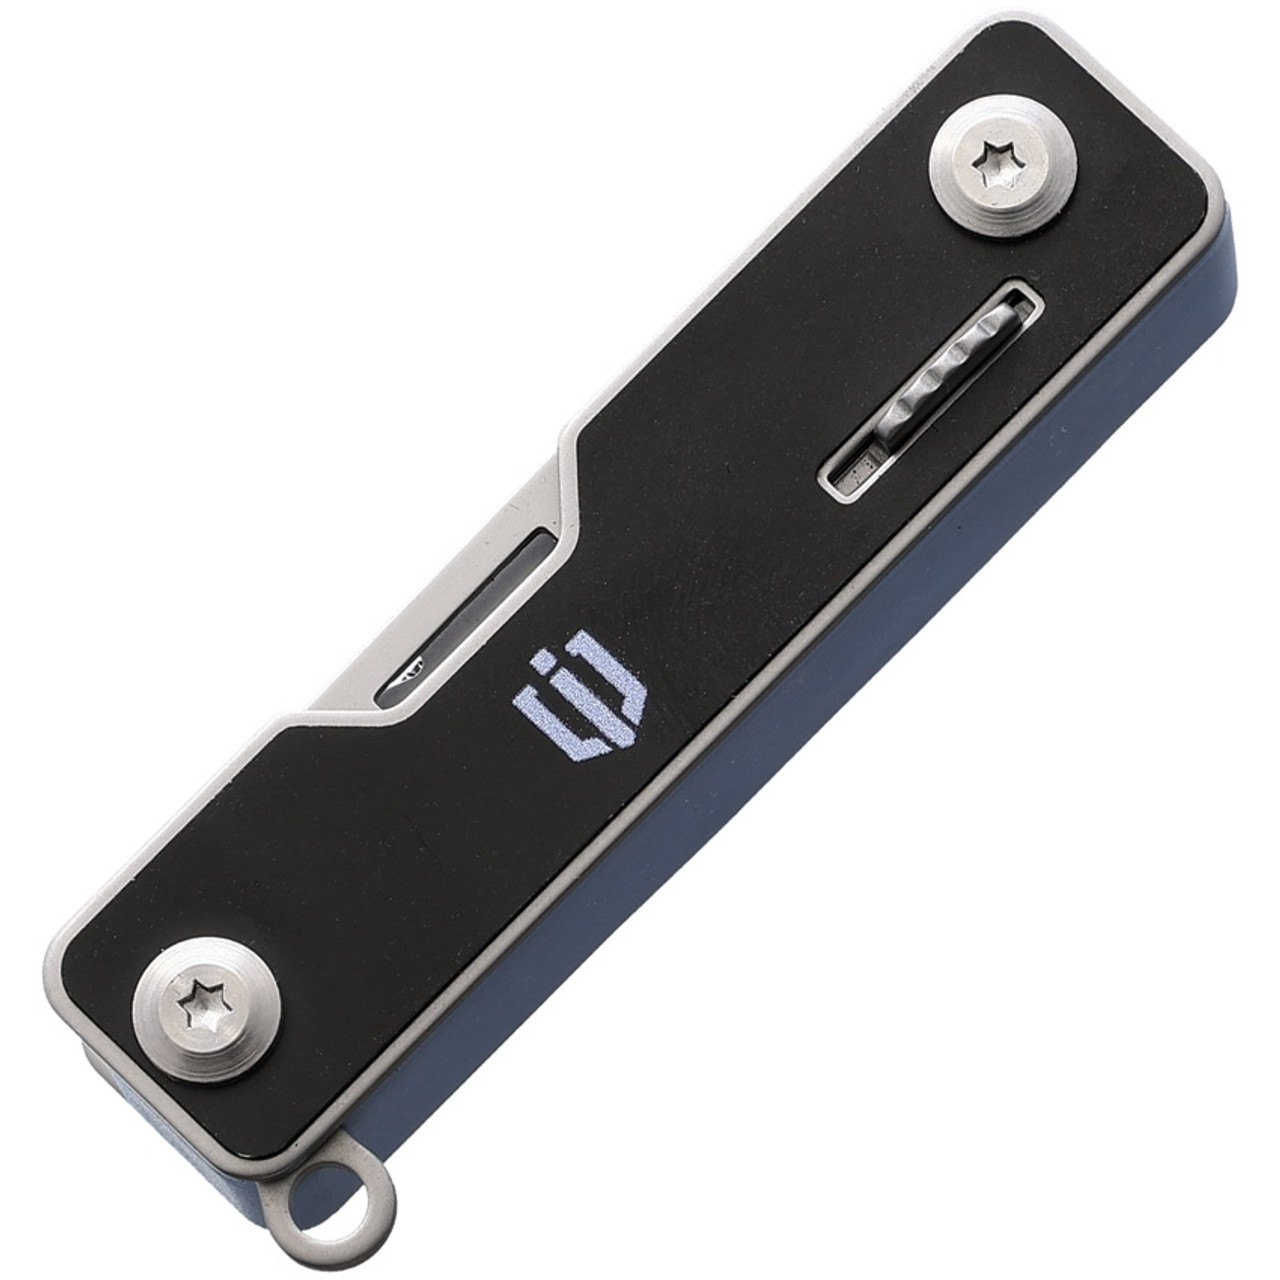 Shieldon Lileep Multi Tool (AK01) 3.25" Blue ABS / Black Aluminum Handle, 8 Tools